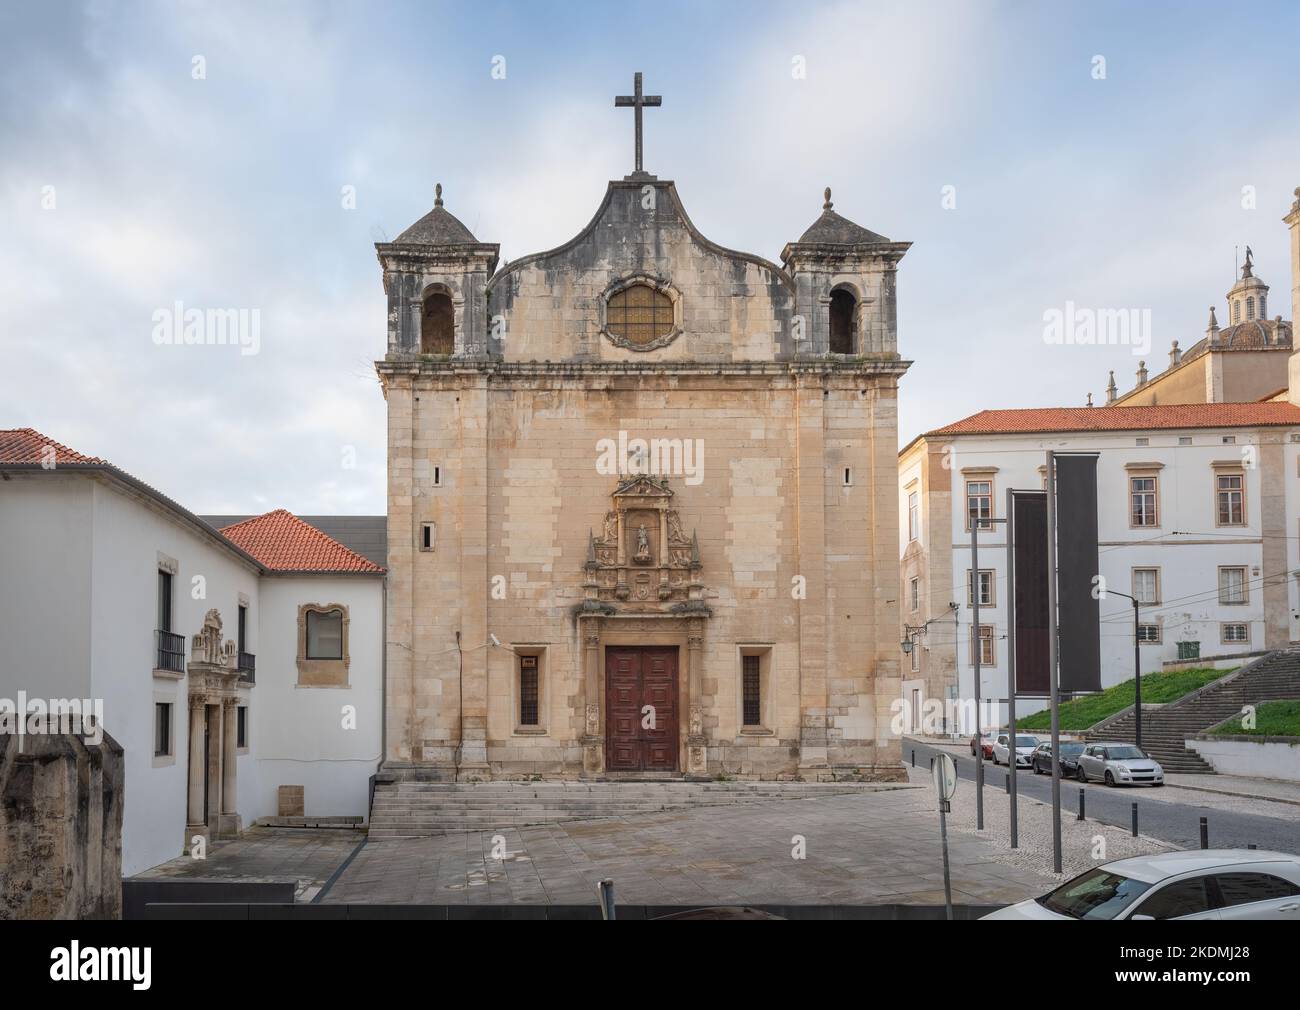 Church of Sao Joao de Almedina - Coimbra, Portugal Stock Photo